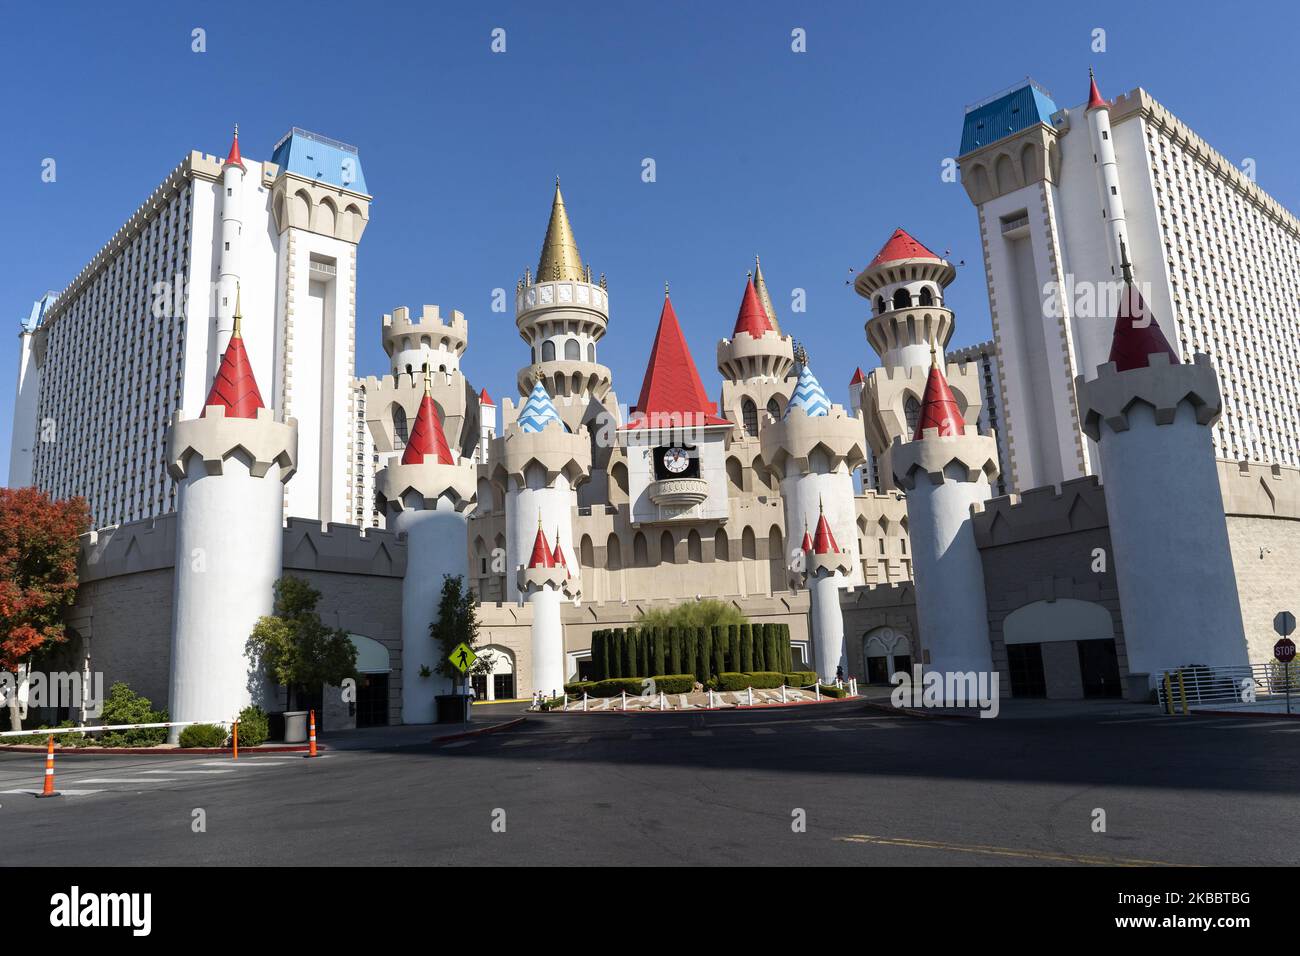 Außenansicht des Excalibur Hotels und Casinos, das am 11. November 2019 ein mittelalterliches Schloss in Las Vegas, USA, nachbildet (Foto: Joaquin Gomez Sastre/NurPhoto) Stockfoto